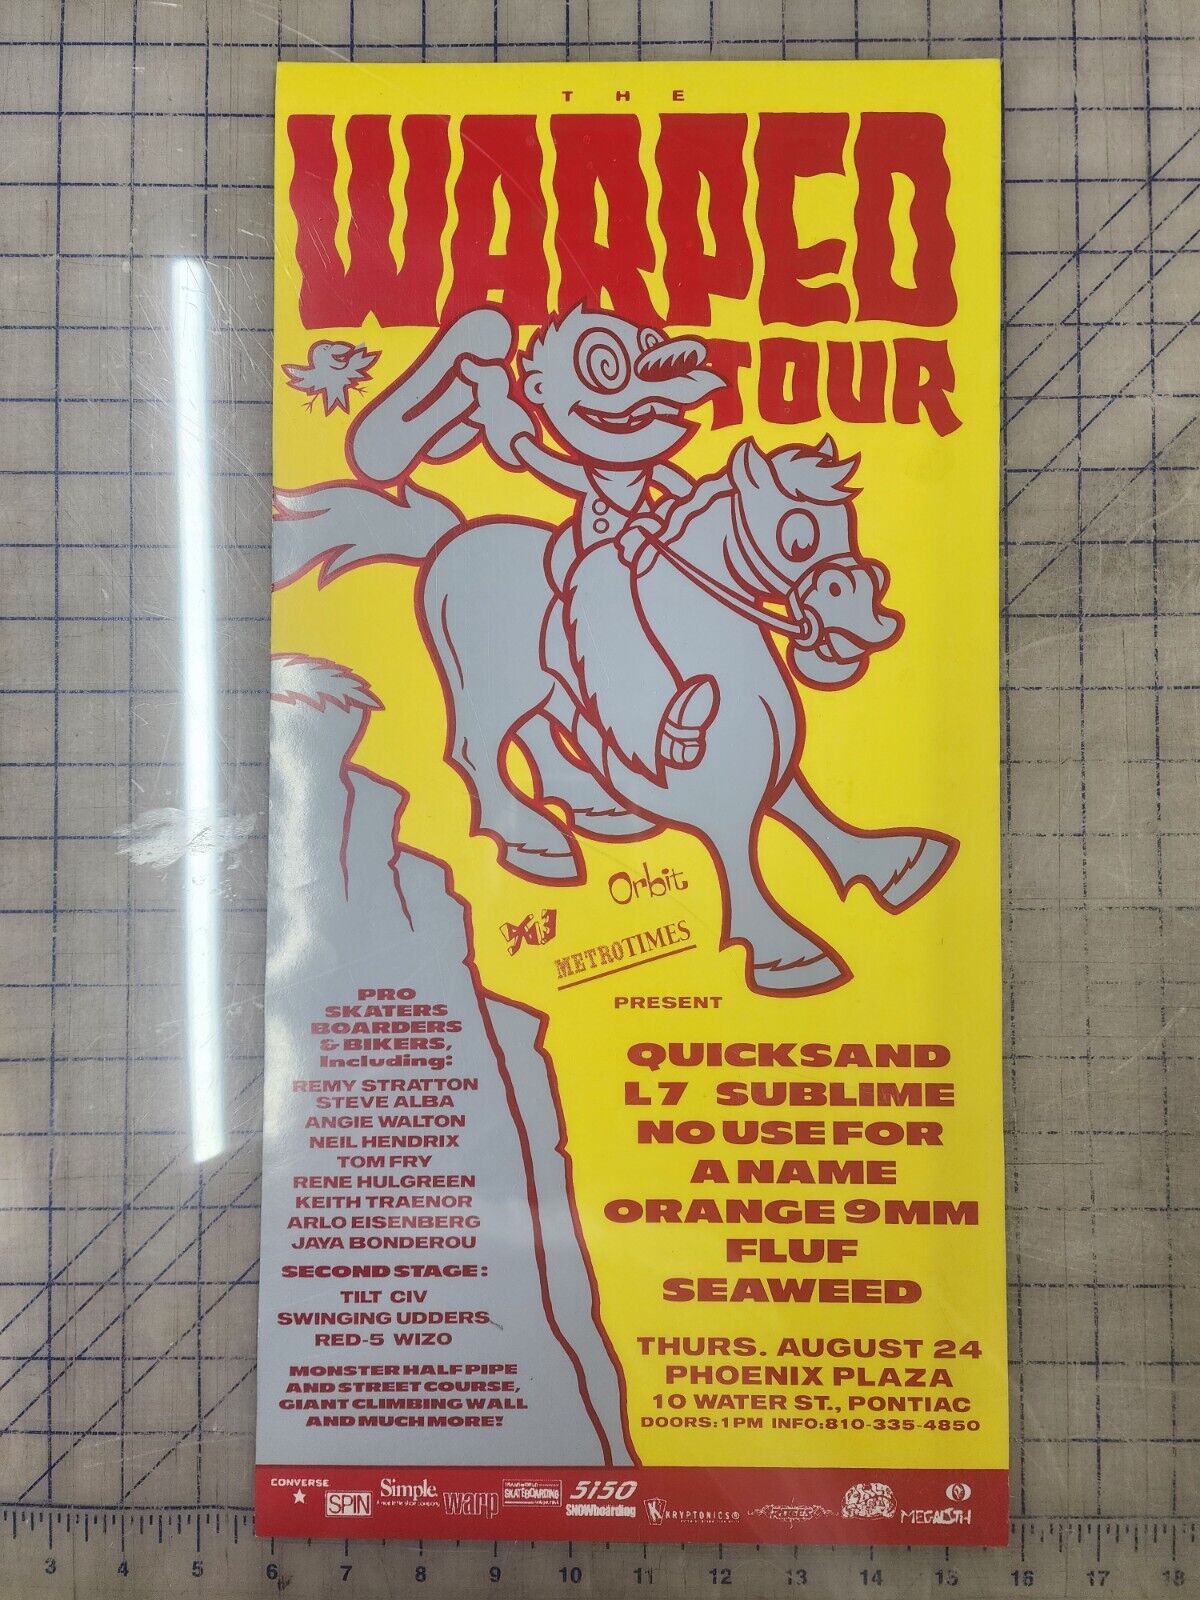 Vintage 1995 VANS WARPED TOUR Poster Sublime, Quicksand, L7, Fluf, Pontiac Mi